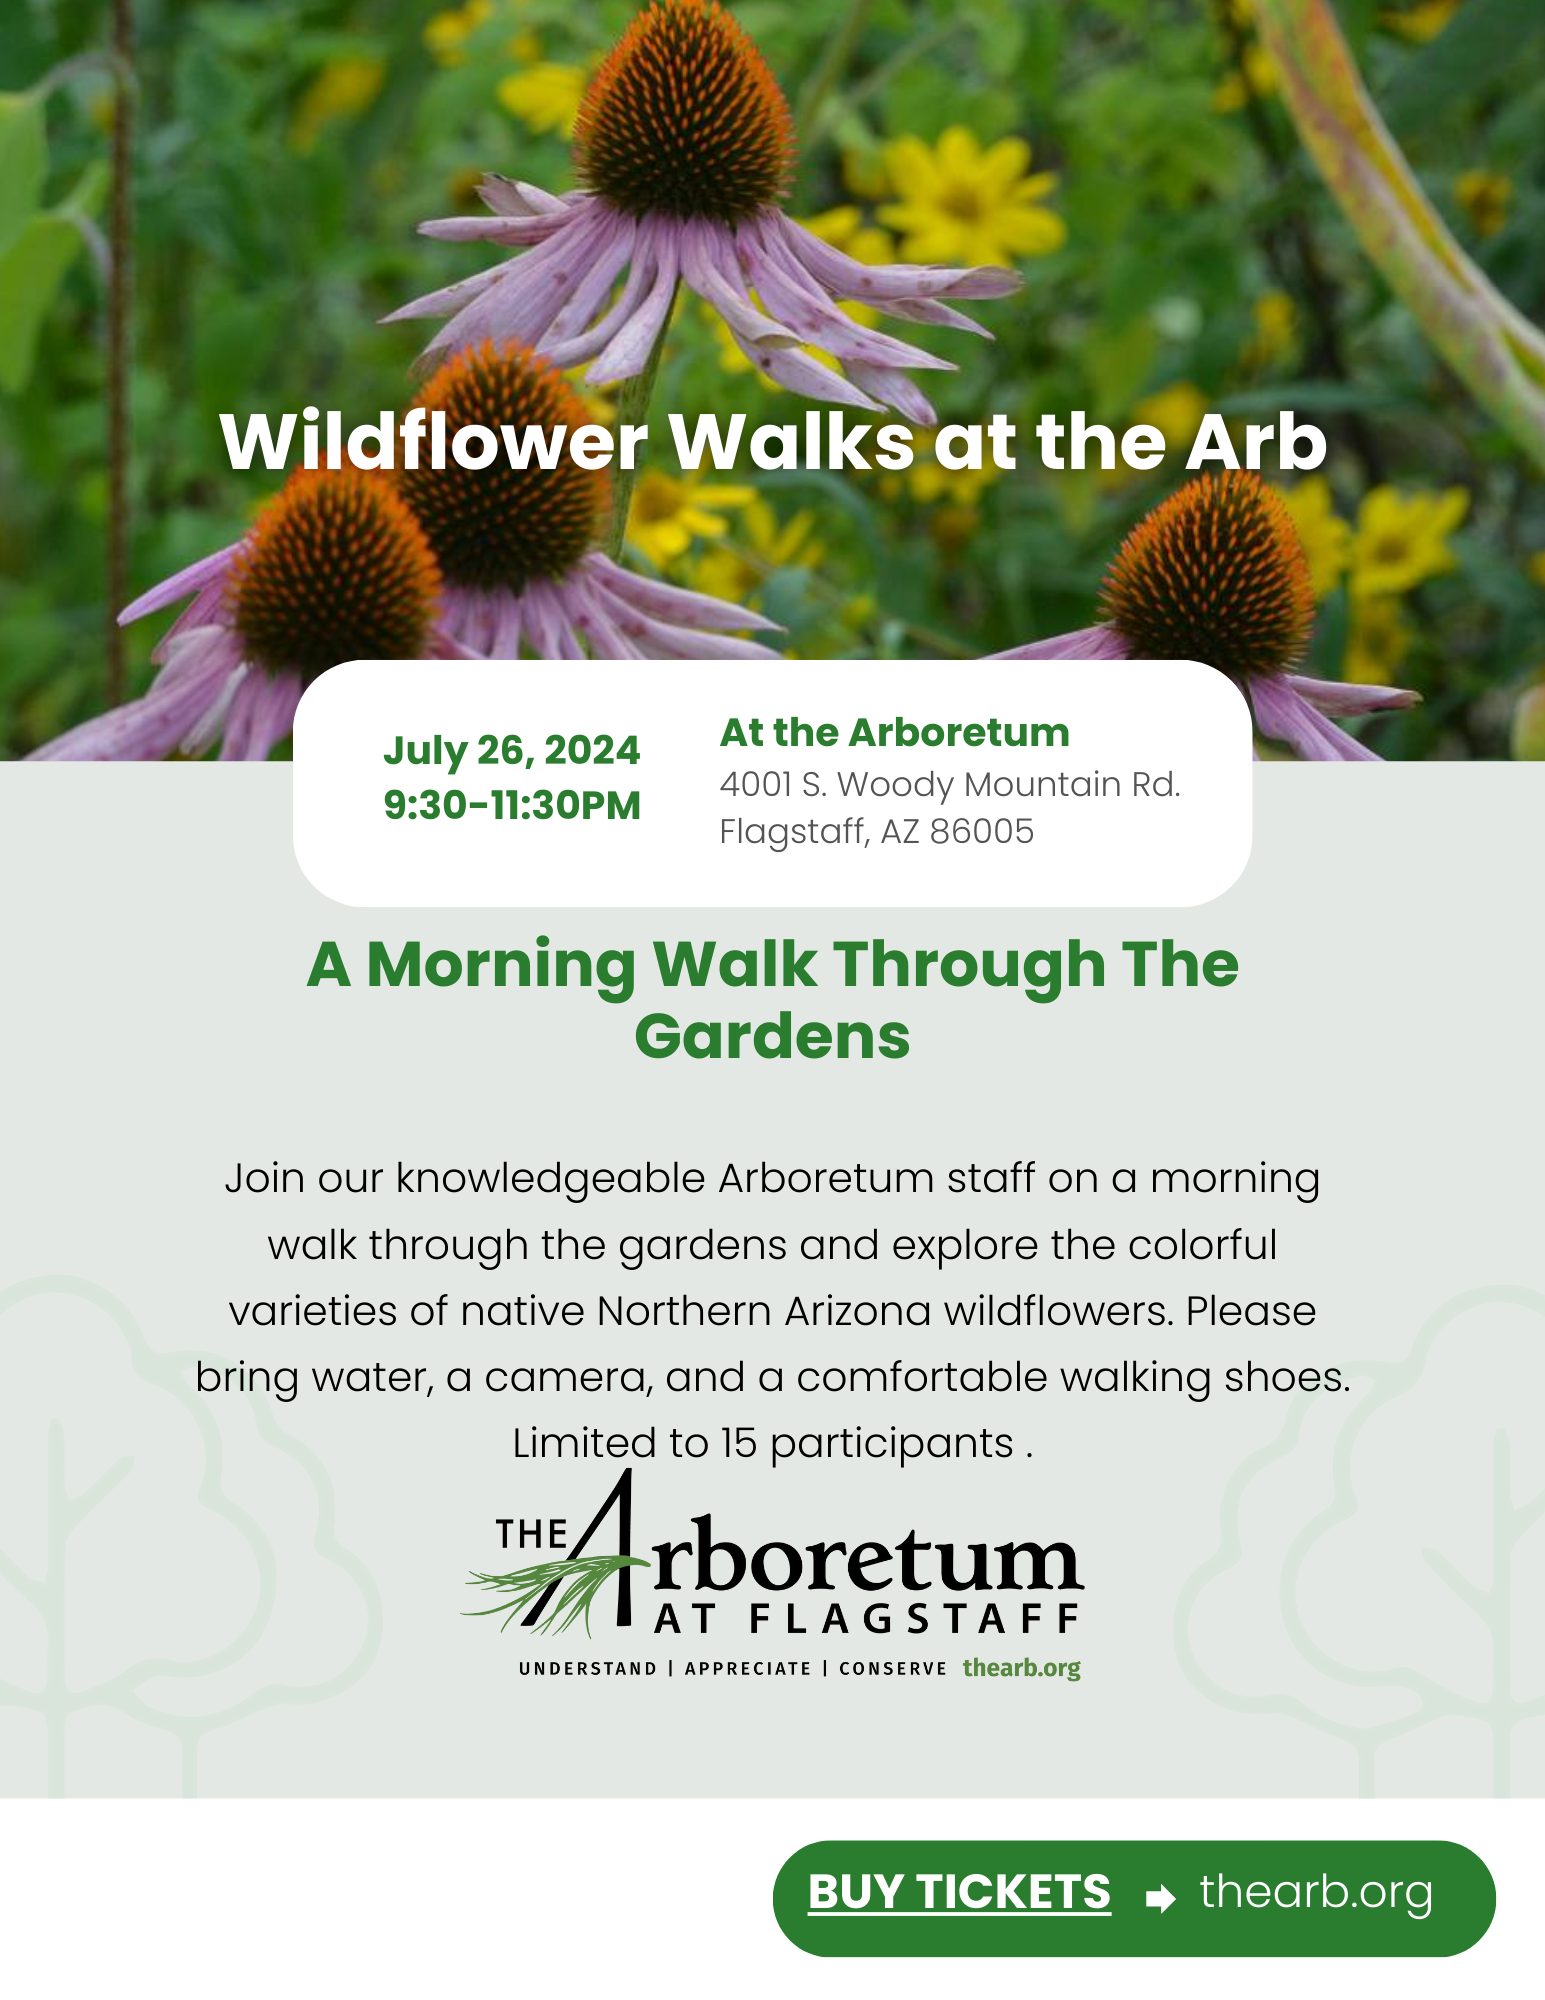 Wildflower Walk 7/26/24